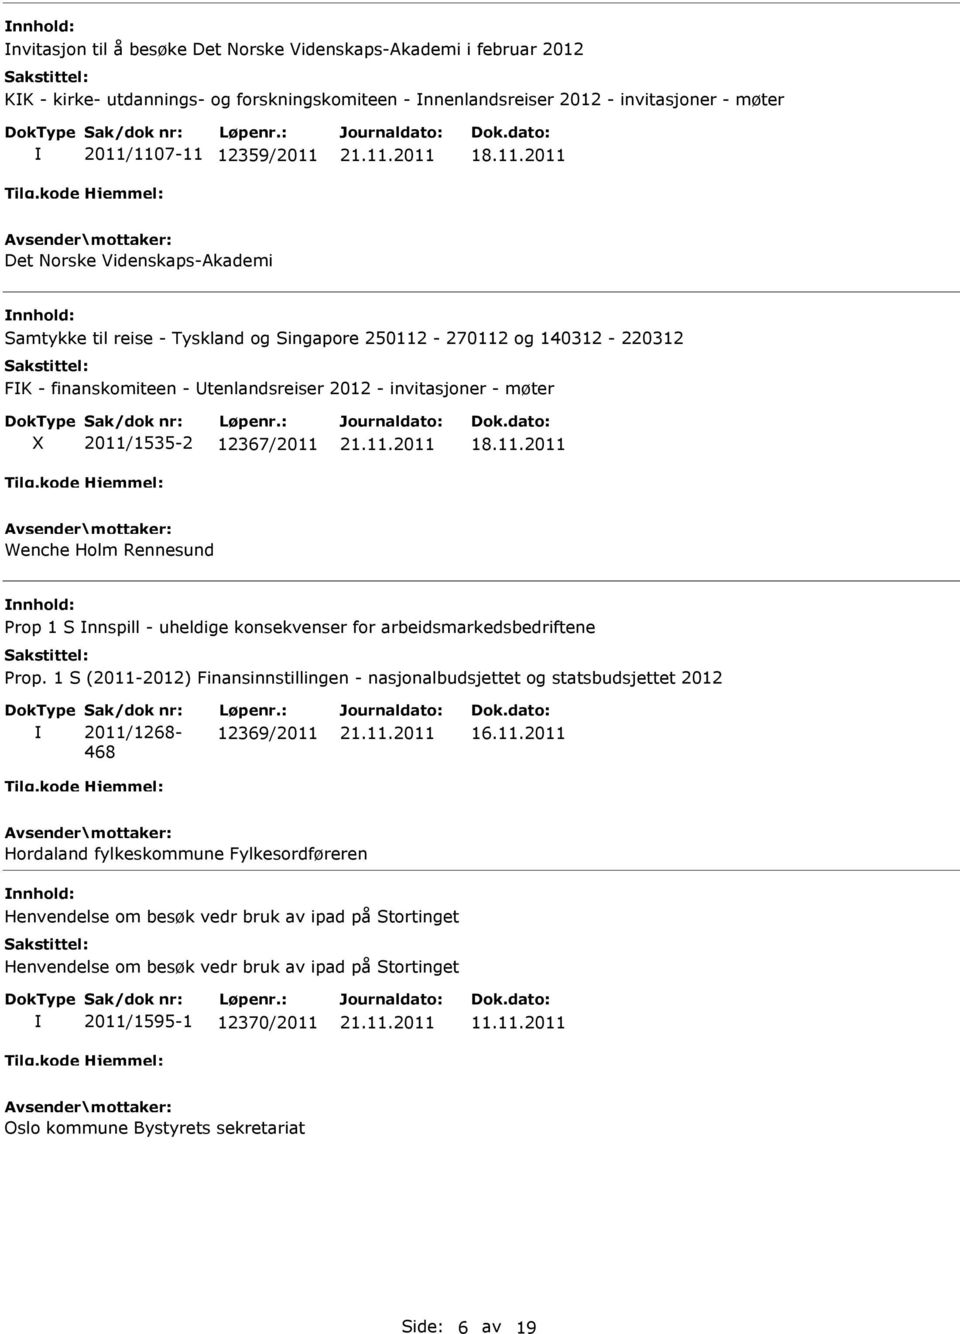 Rennesund Prop 1 S nnspill - uheldige konsekvenser for arbeidsmarkedsbedriftene Prop. 1 S (2011-2012) Finansinnstillingen - nasjonalbudsjettet og statsbudsjettet 2012 Sak/dok nr: 2011/1268-468 Løpenr.